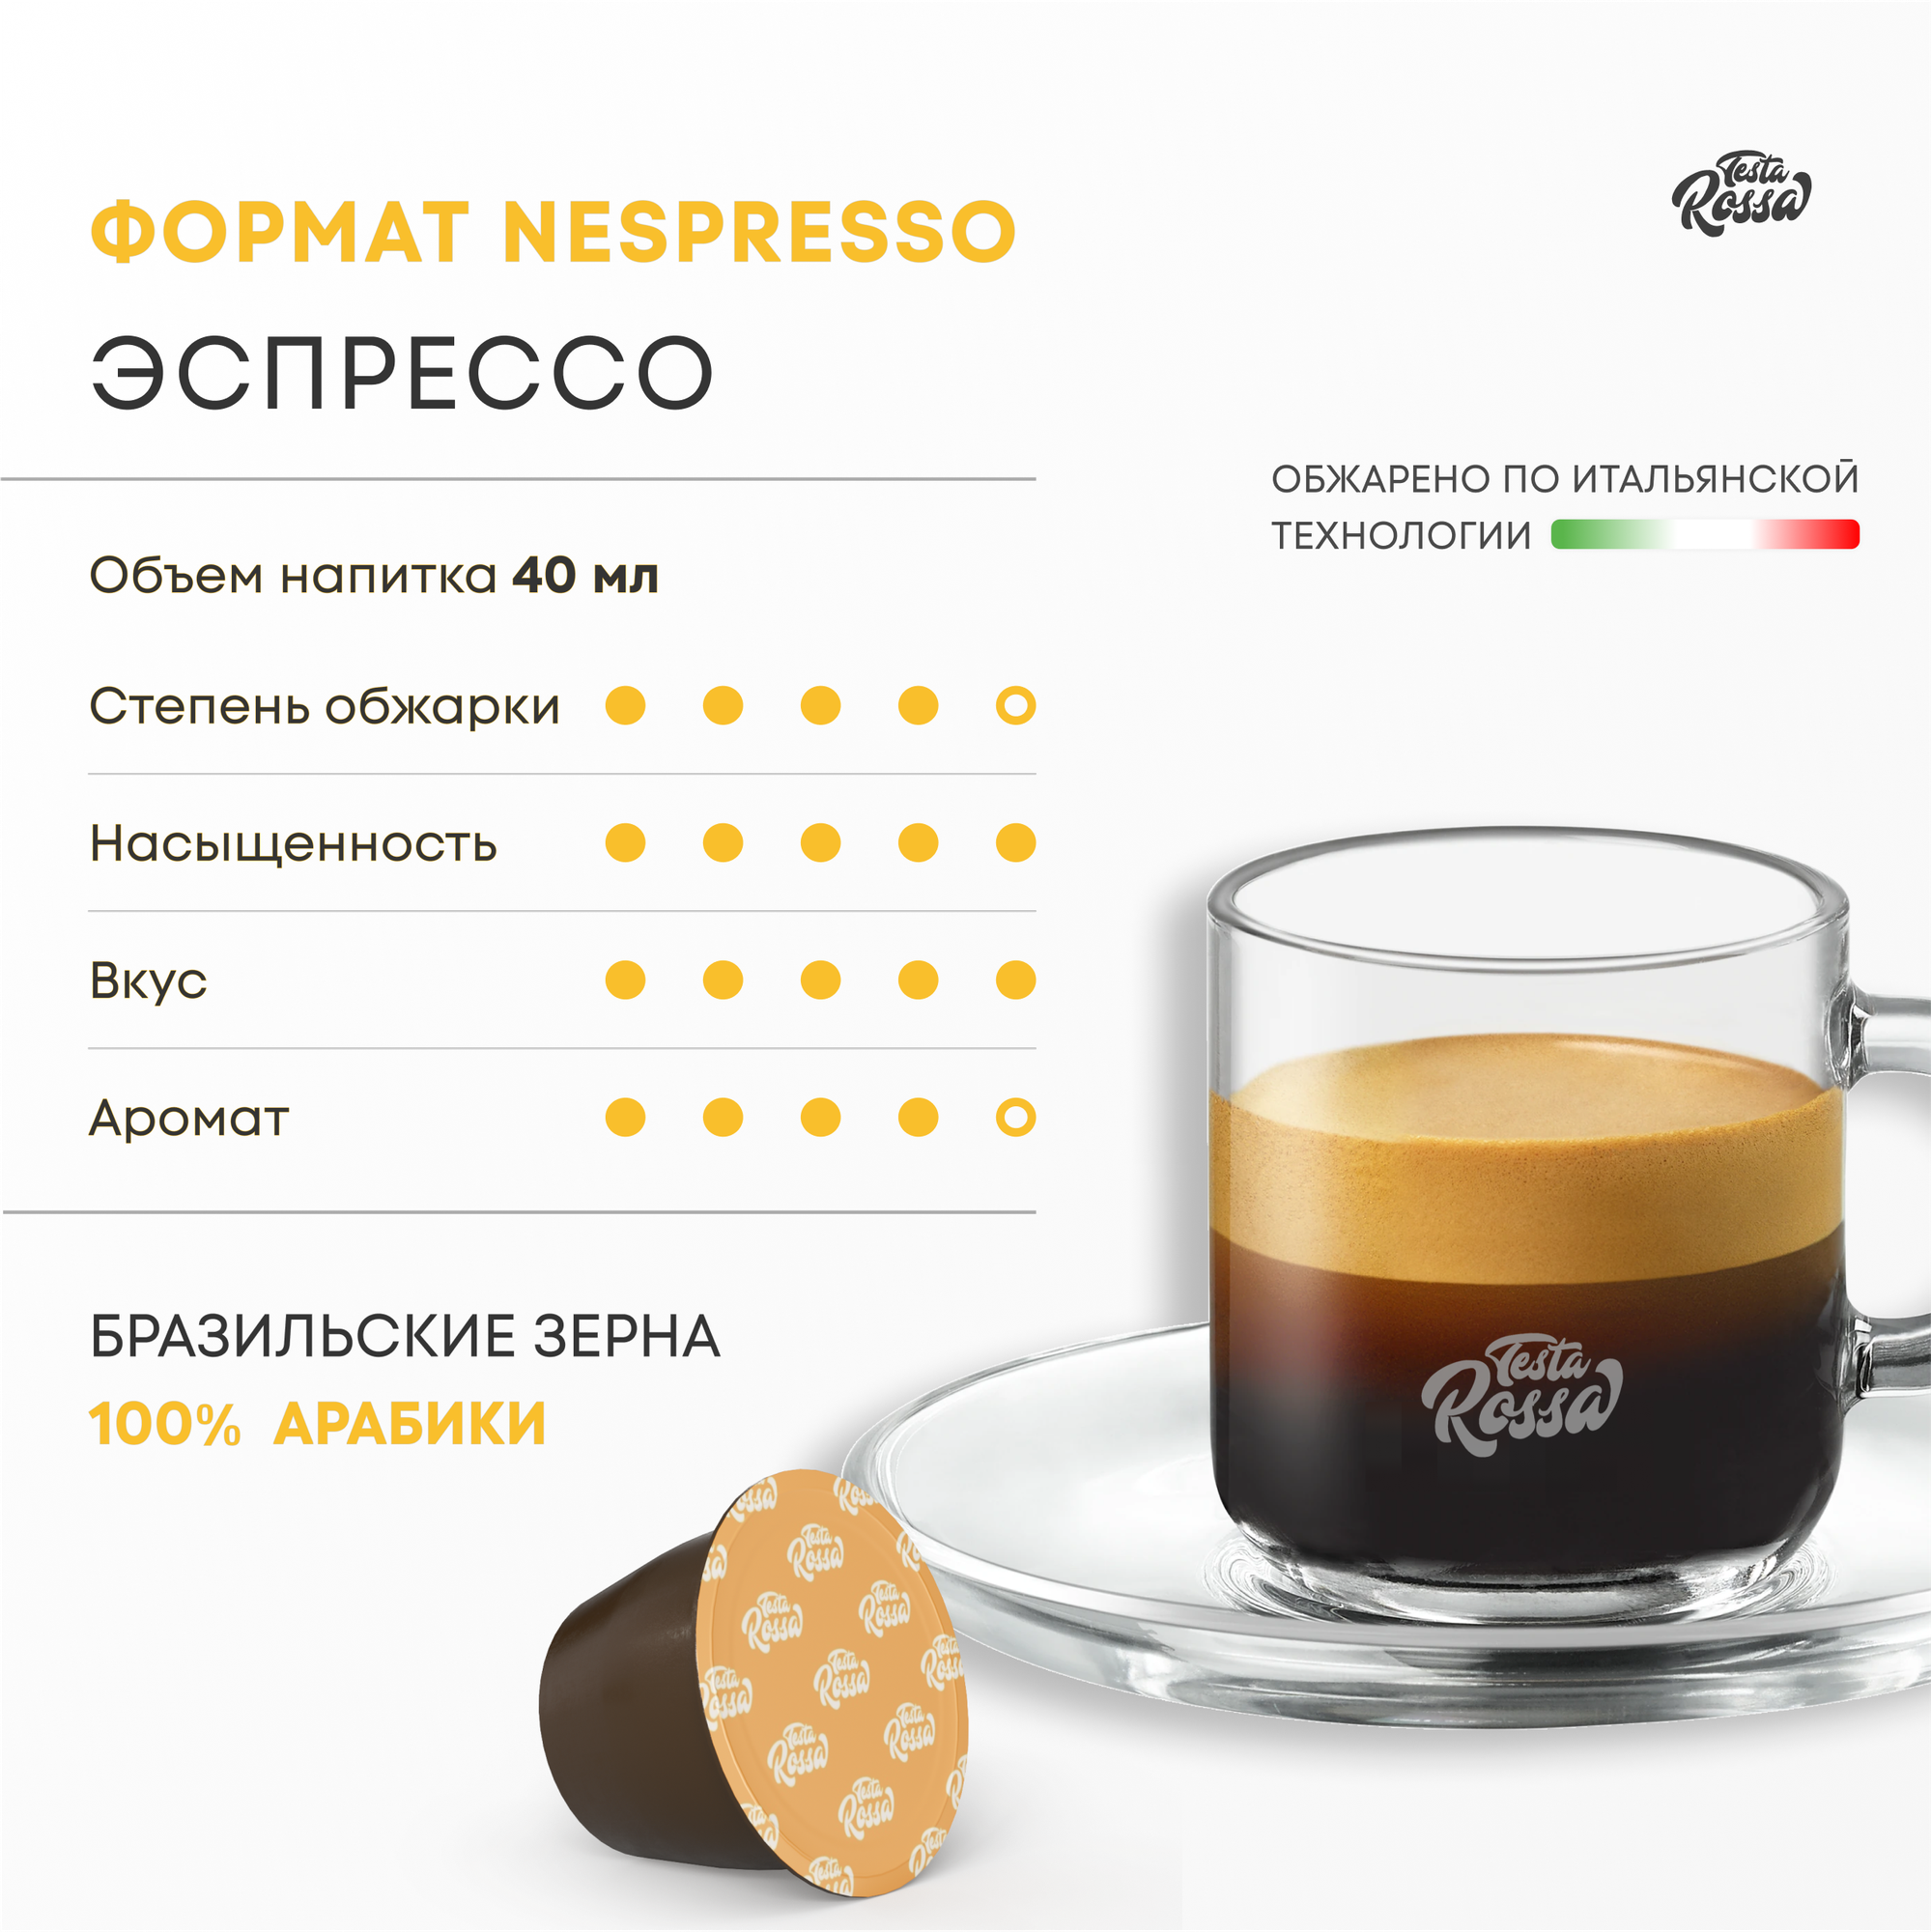 Эспрессо Арабика 100% - Капсулы Testa Rossa - 30 шт, набор кофе в капсулах неспрессо, для кофемашины NESPRESSO - фотография № 2